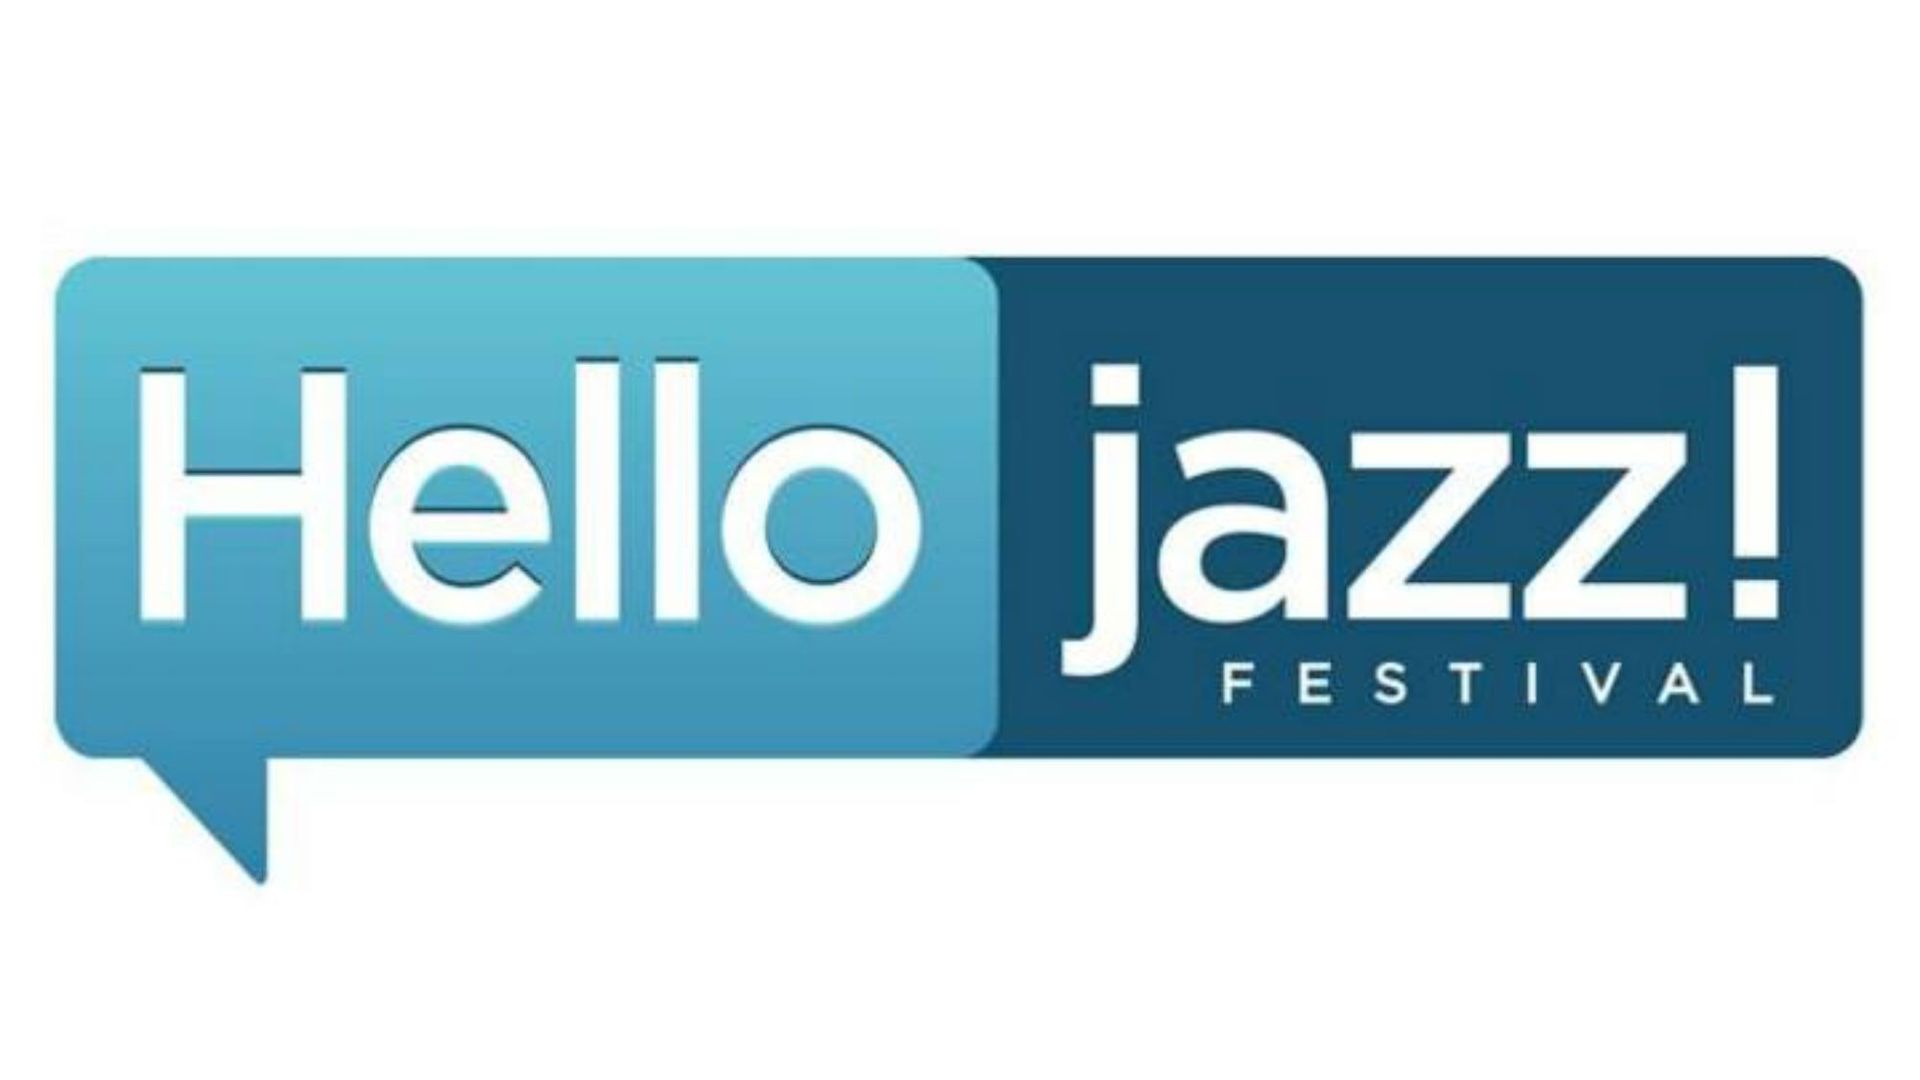 Le Hello Jazz Festival propose plus de 60 concerts à travers toute la Belgique